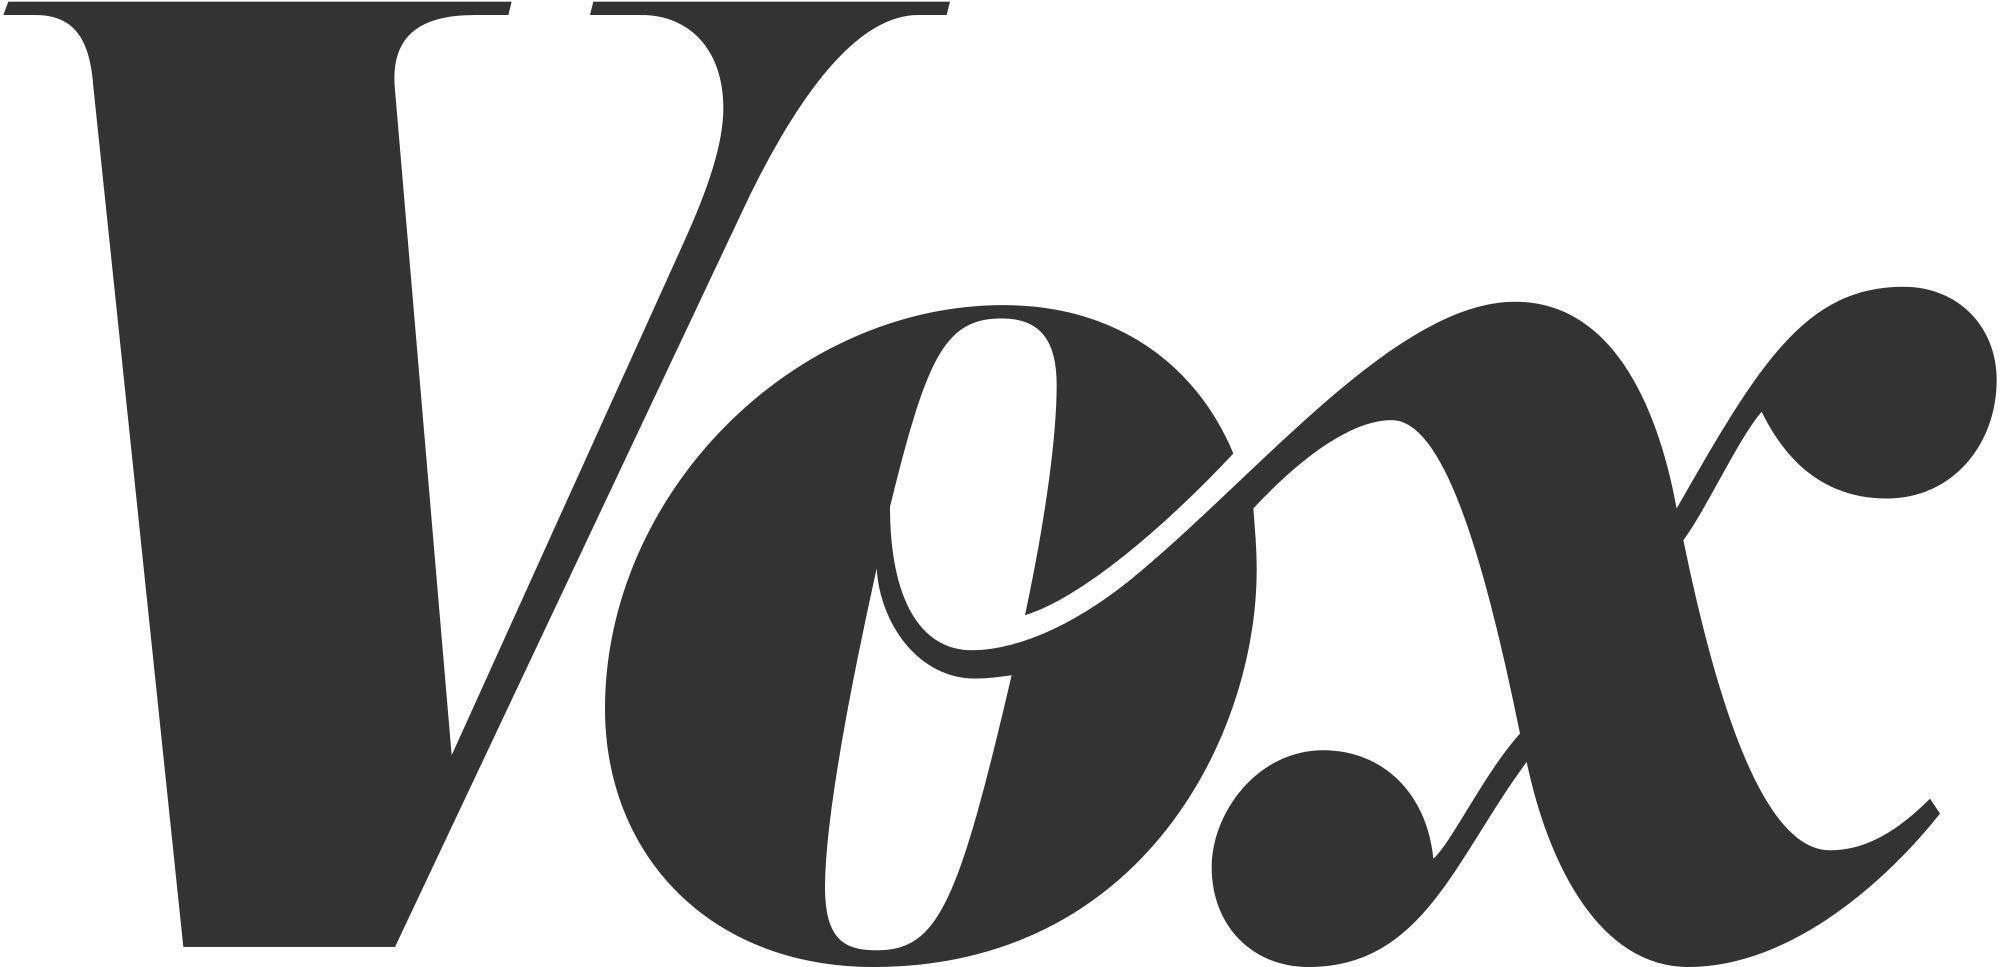 tipografia - A quale categoria di carattere appartiene il logo Vox? - Graphic design ...